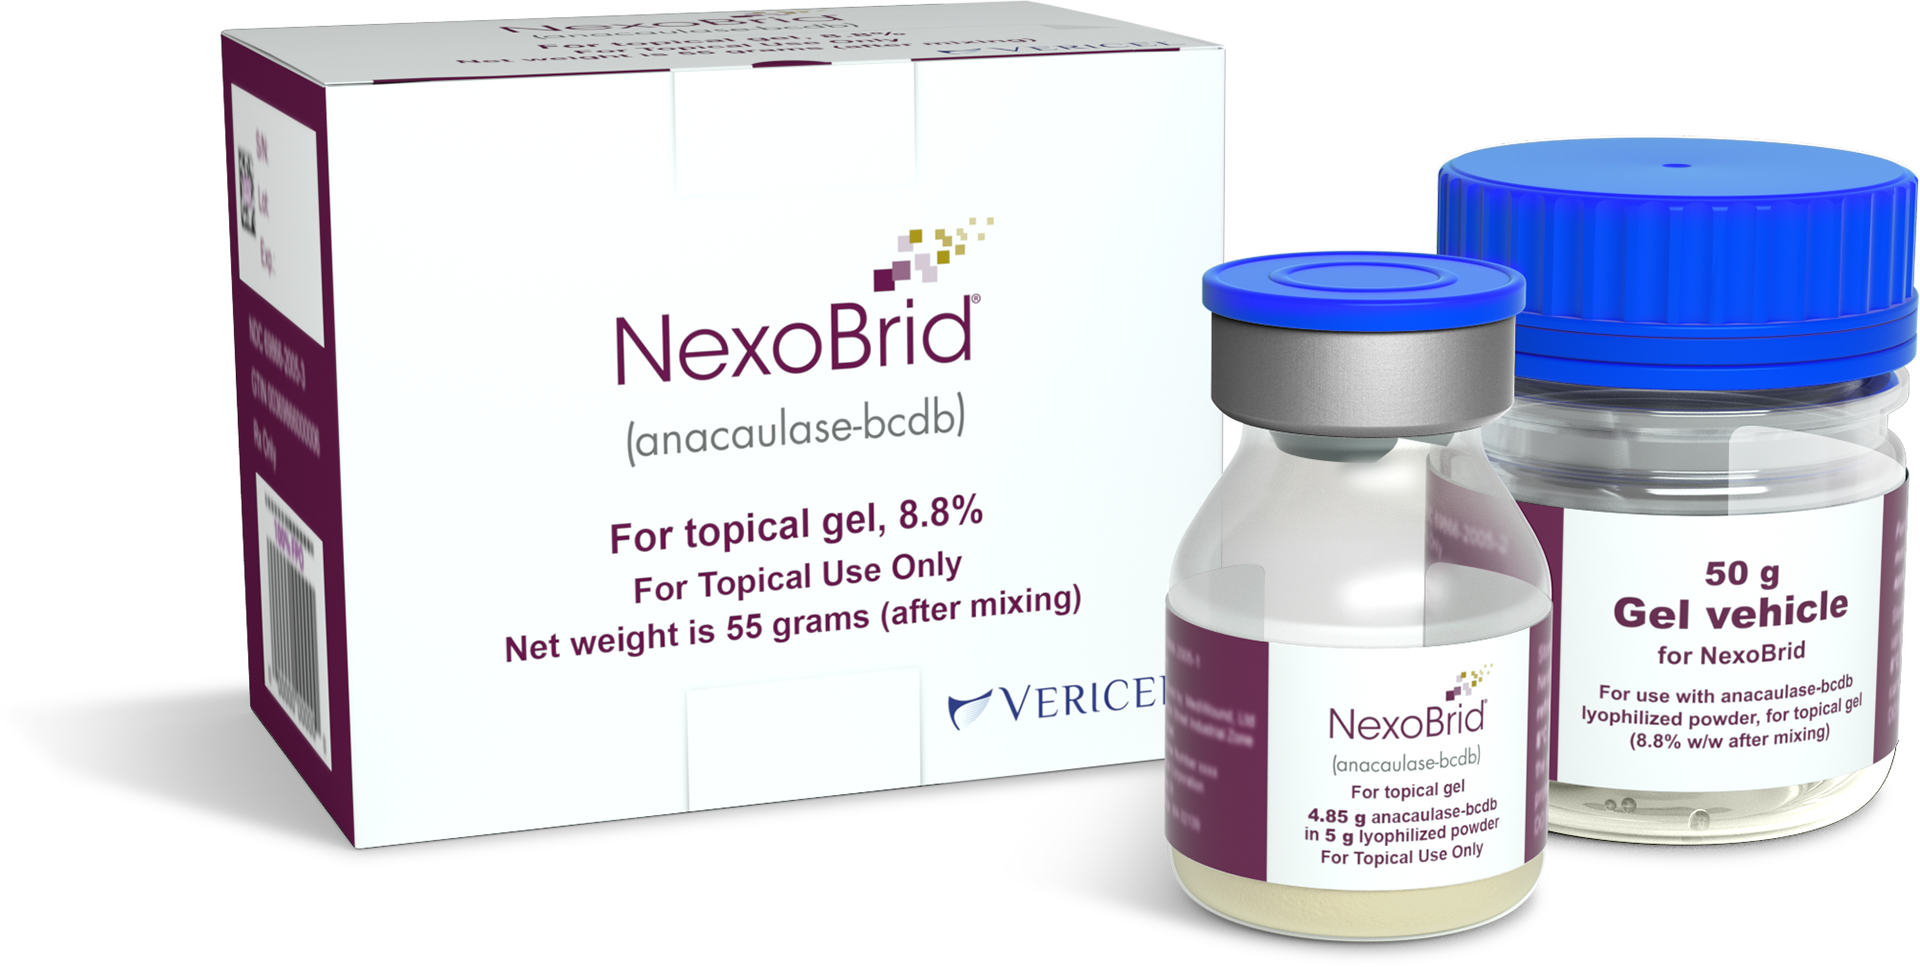 NexoBrid powder and gel